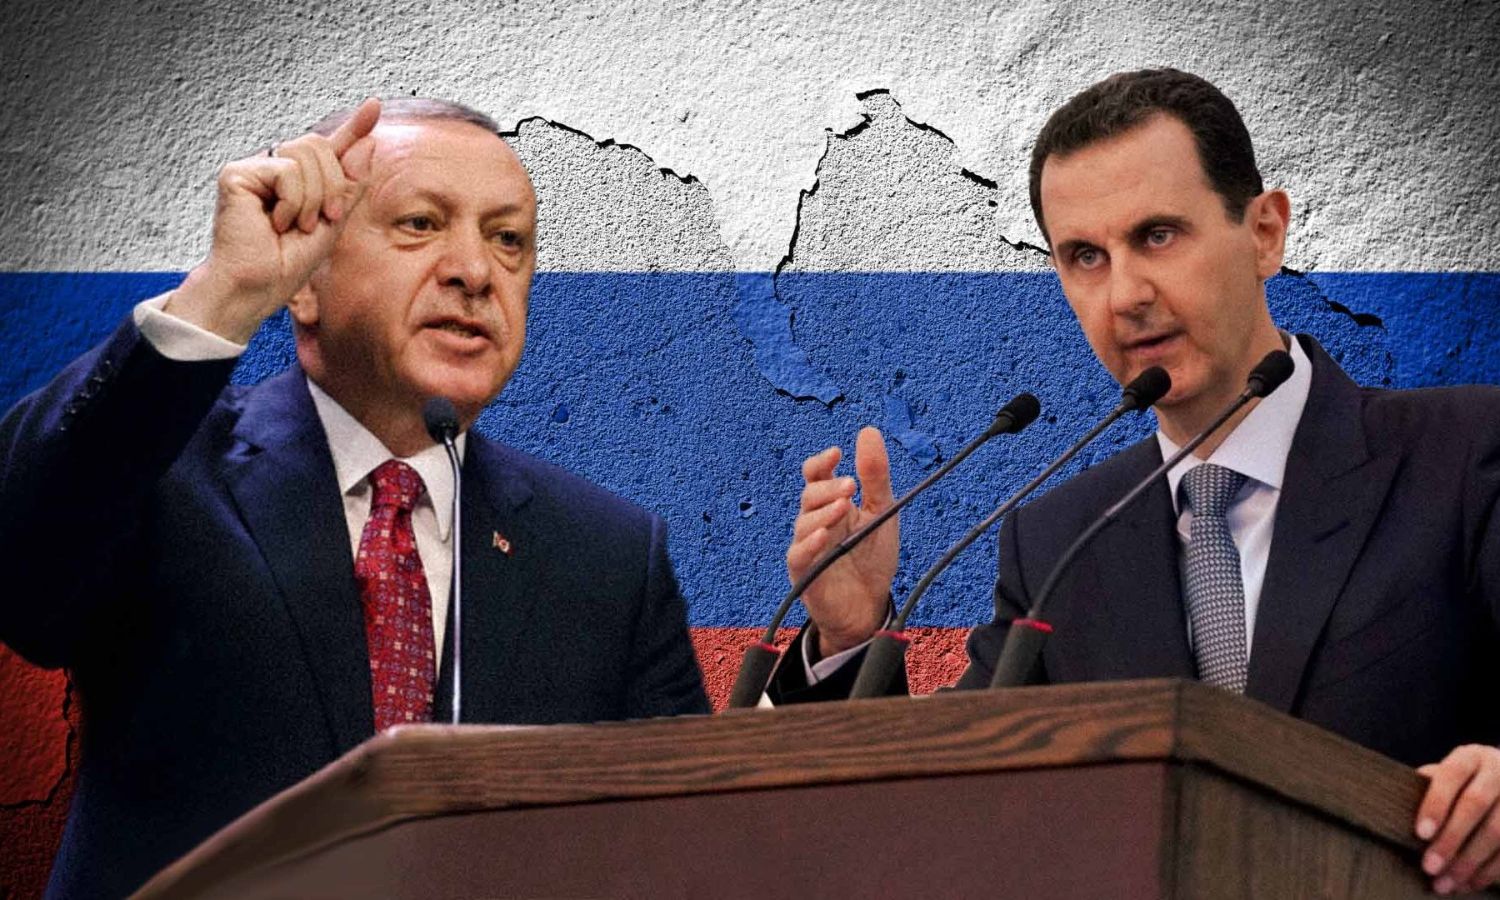 الرئيس التركي رجب طيب أردوغان ورئيس النظام السوري بشار الأسد (تعديل عنب بلدي)